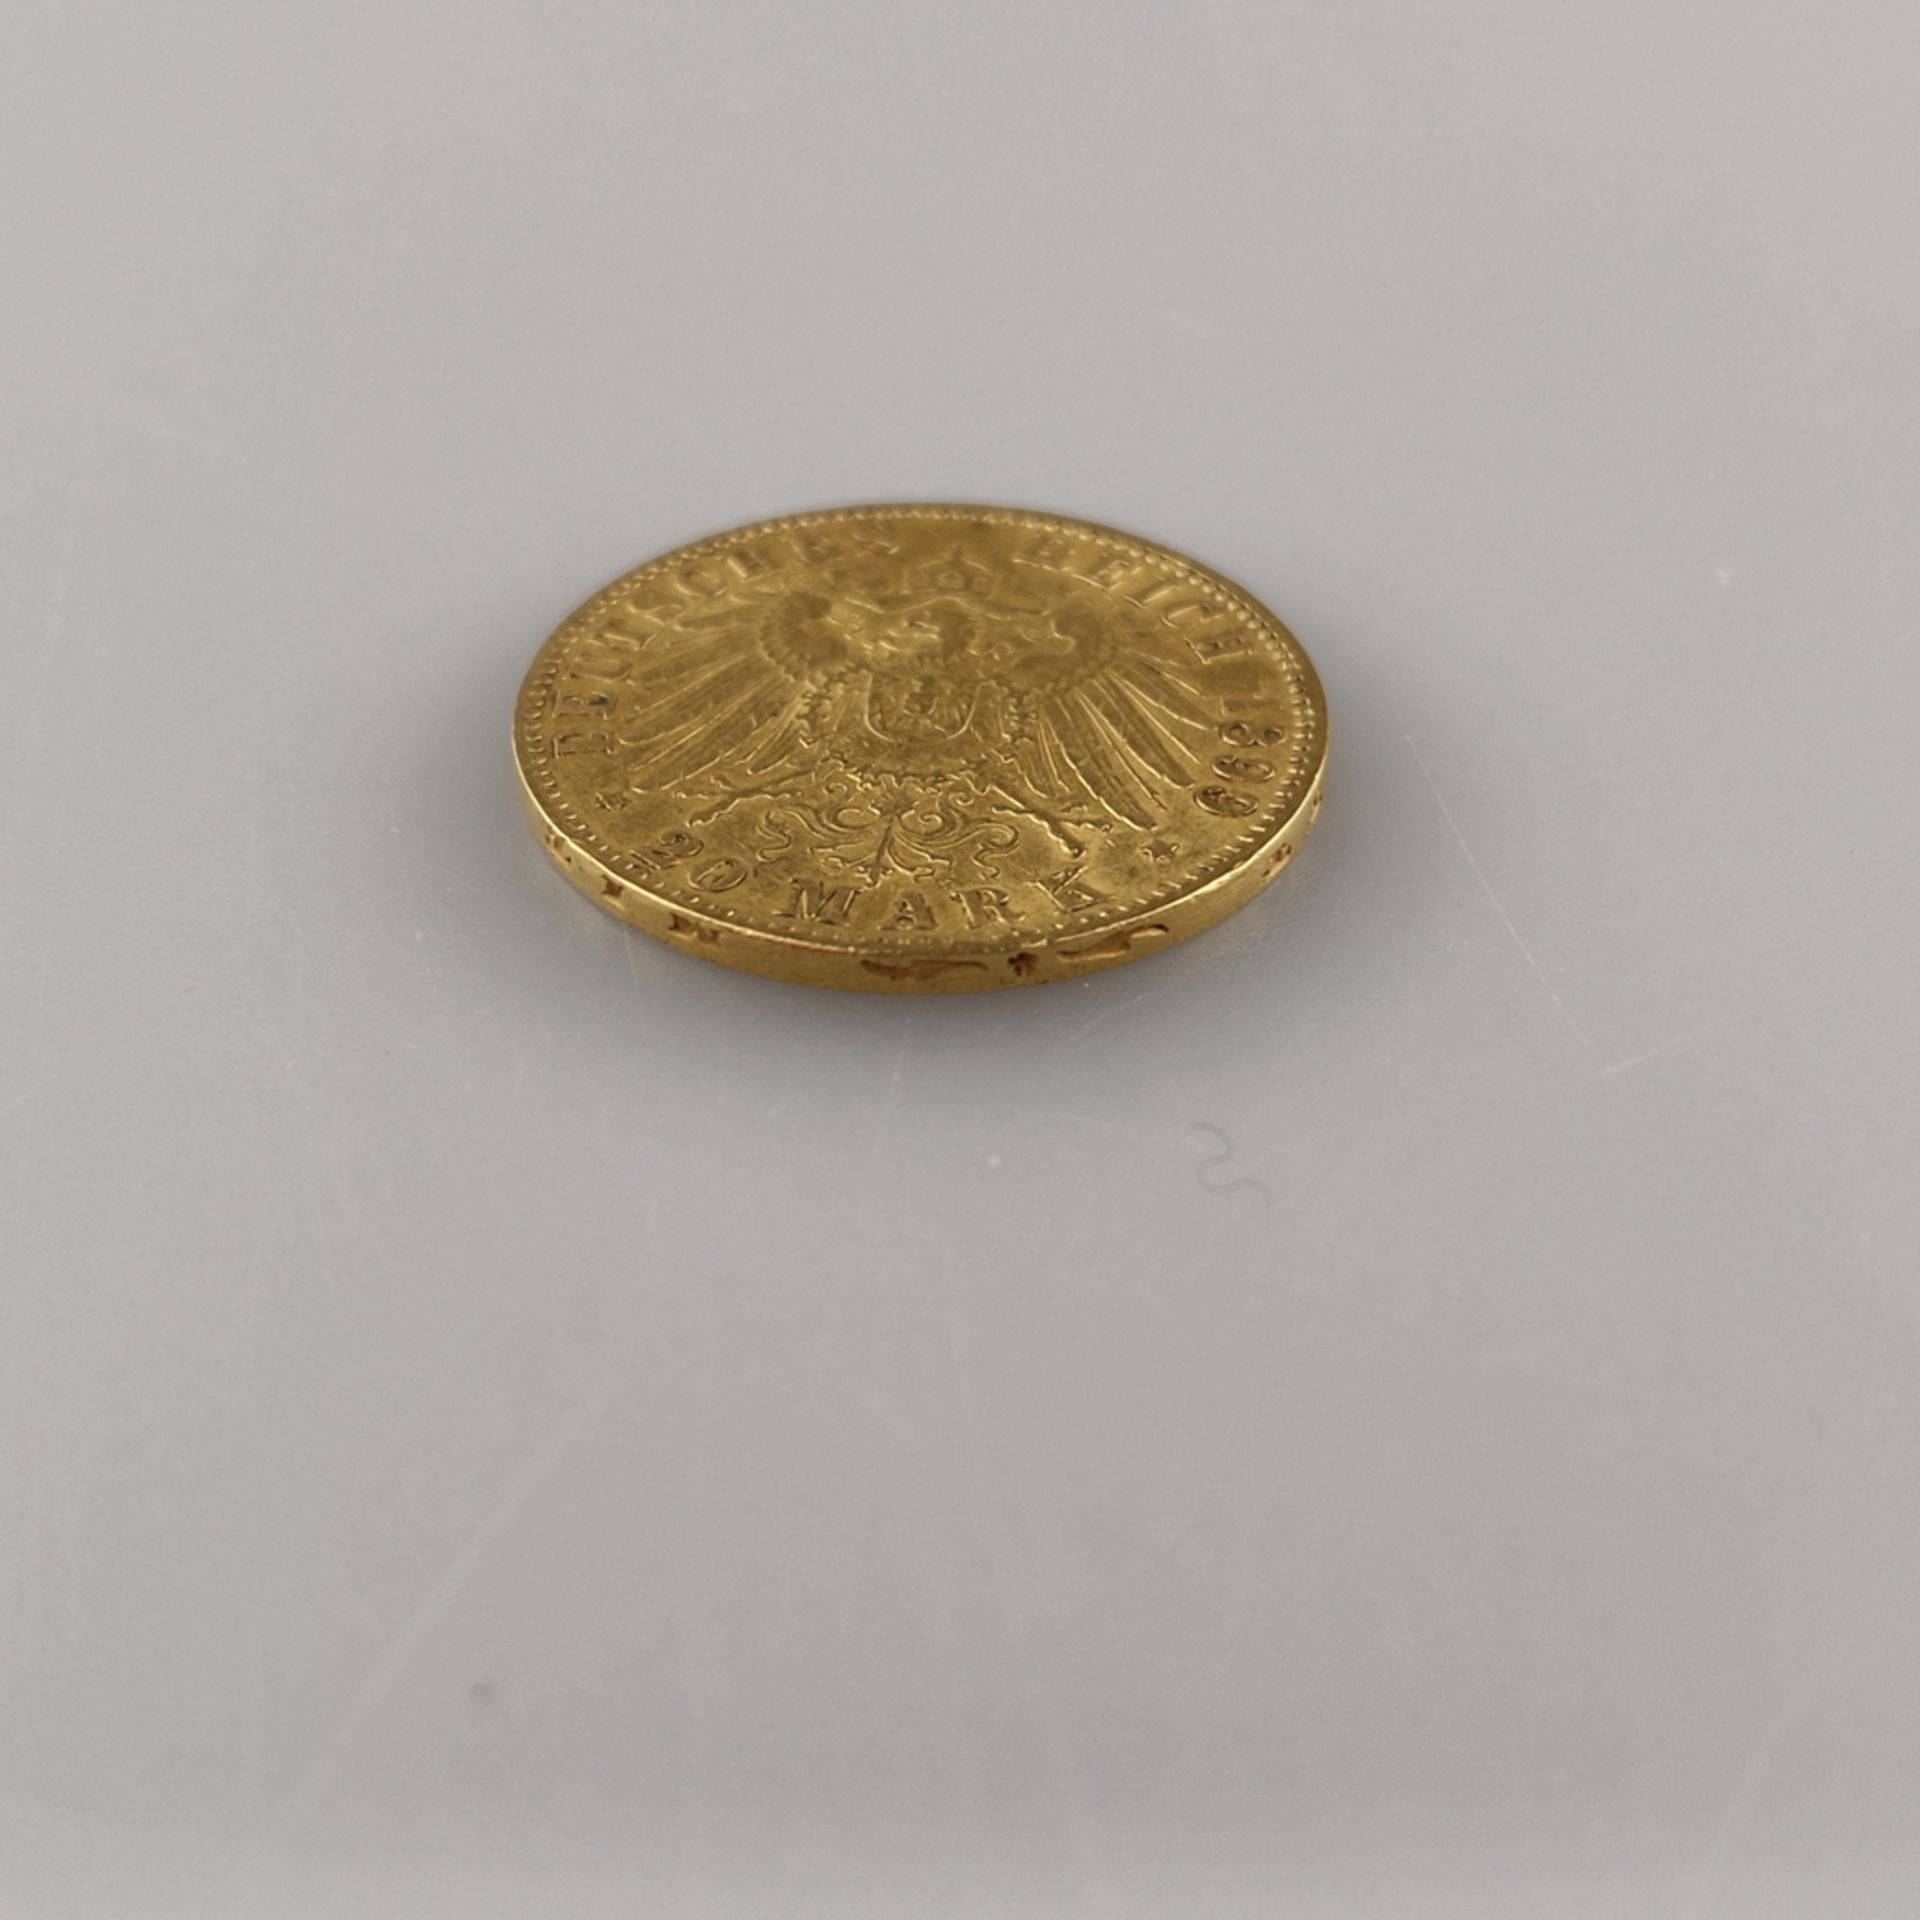 Goldmünze 20 Mark 1899- Deutsches Kaiserreich, Freie und Hansestadt Hamburg, 900/000 Gold, Prägemar - Image 3 of 3